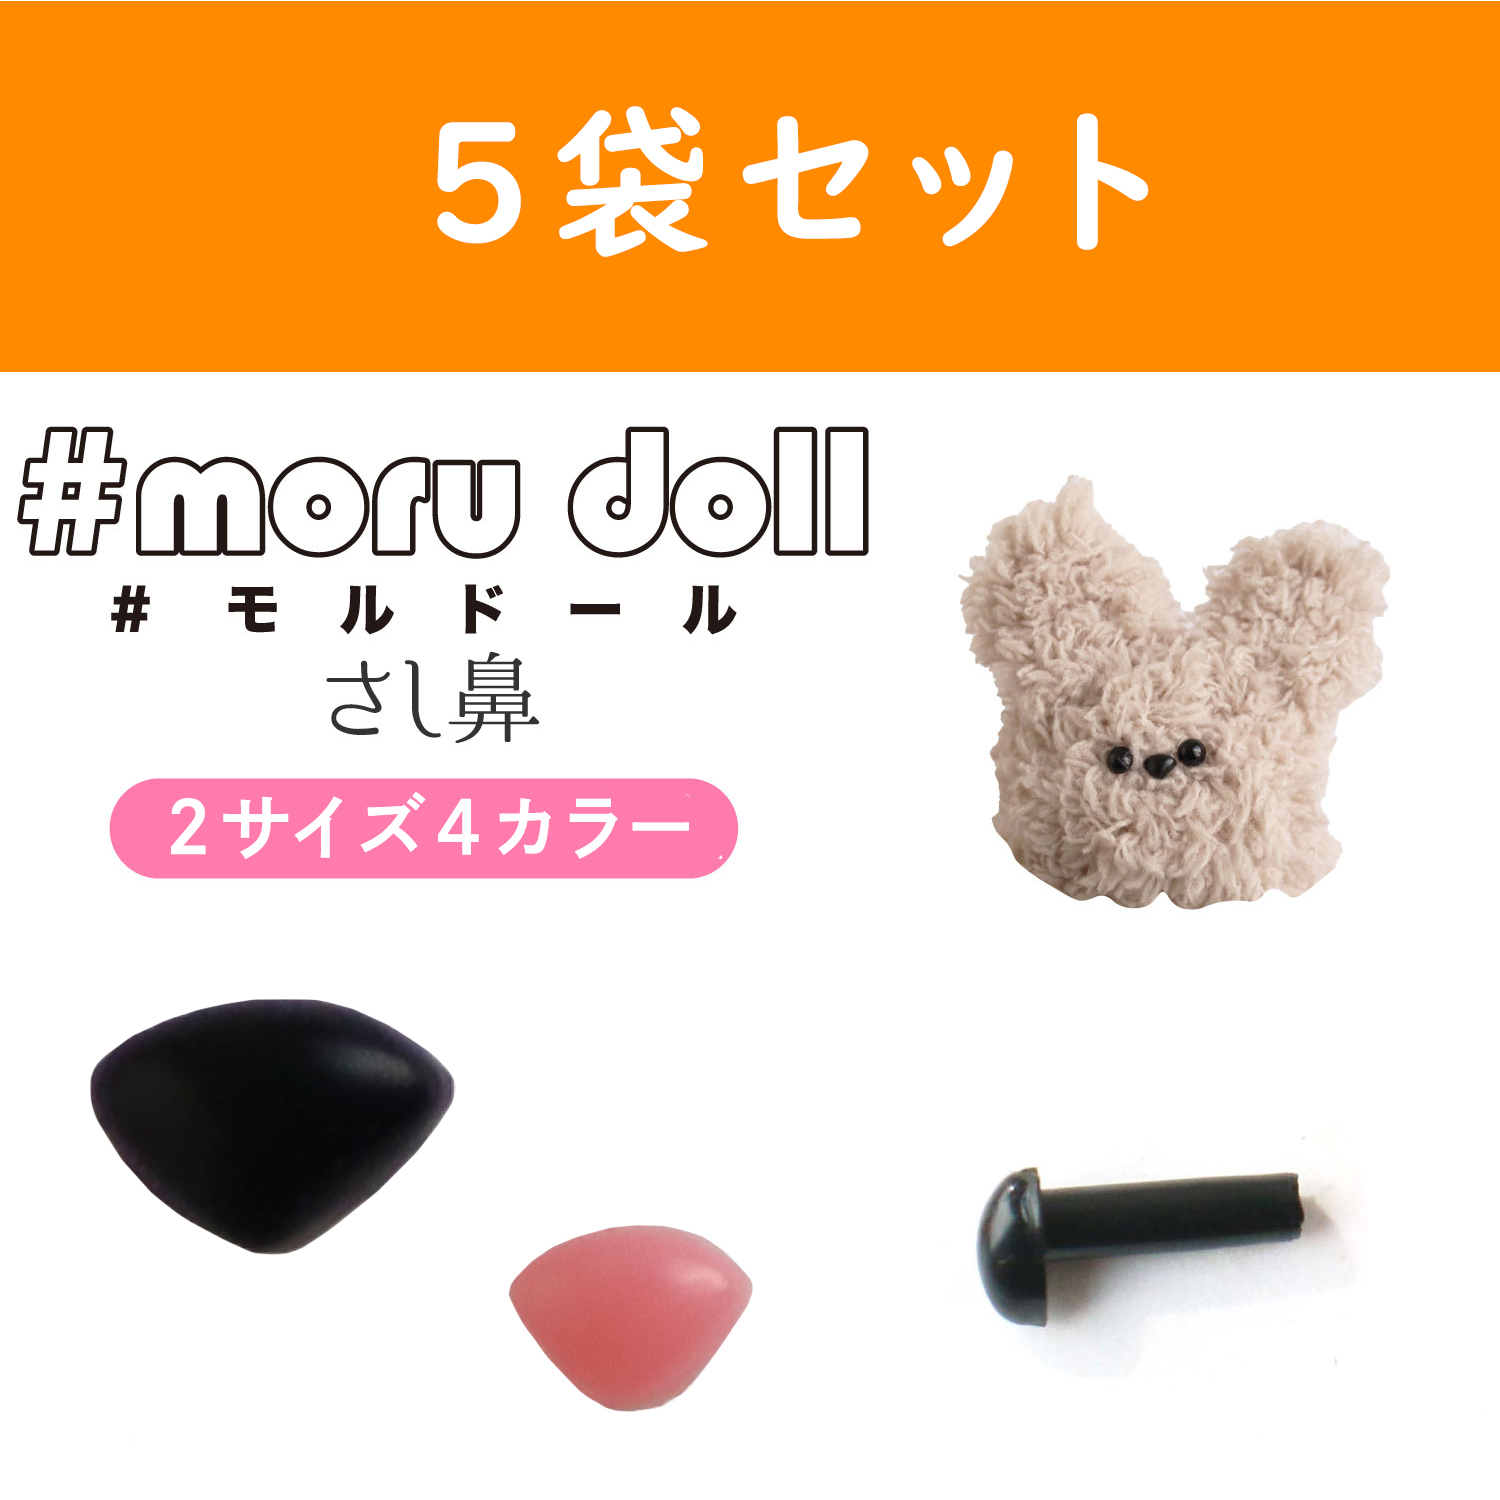 【キャンペーン対象】MOL-5 モール人形 モールドール さし鼻 10個入×5袋セット (セット)